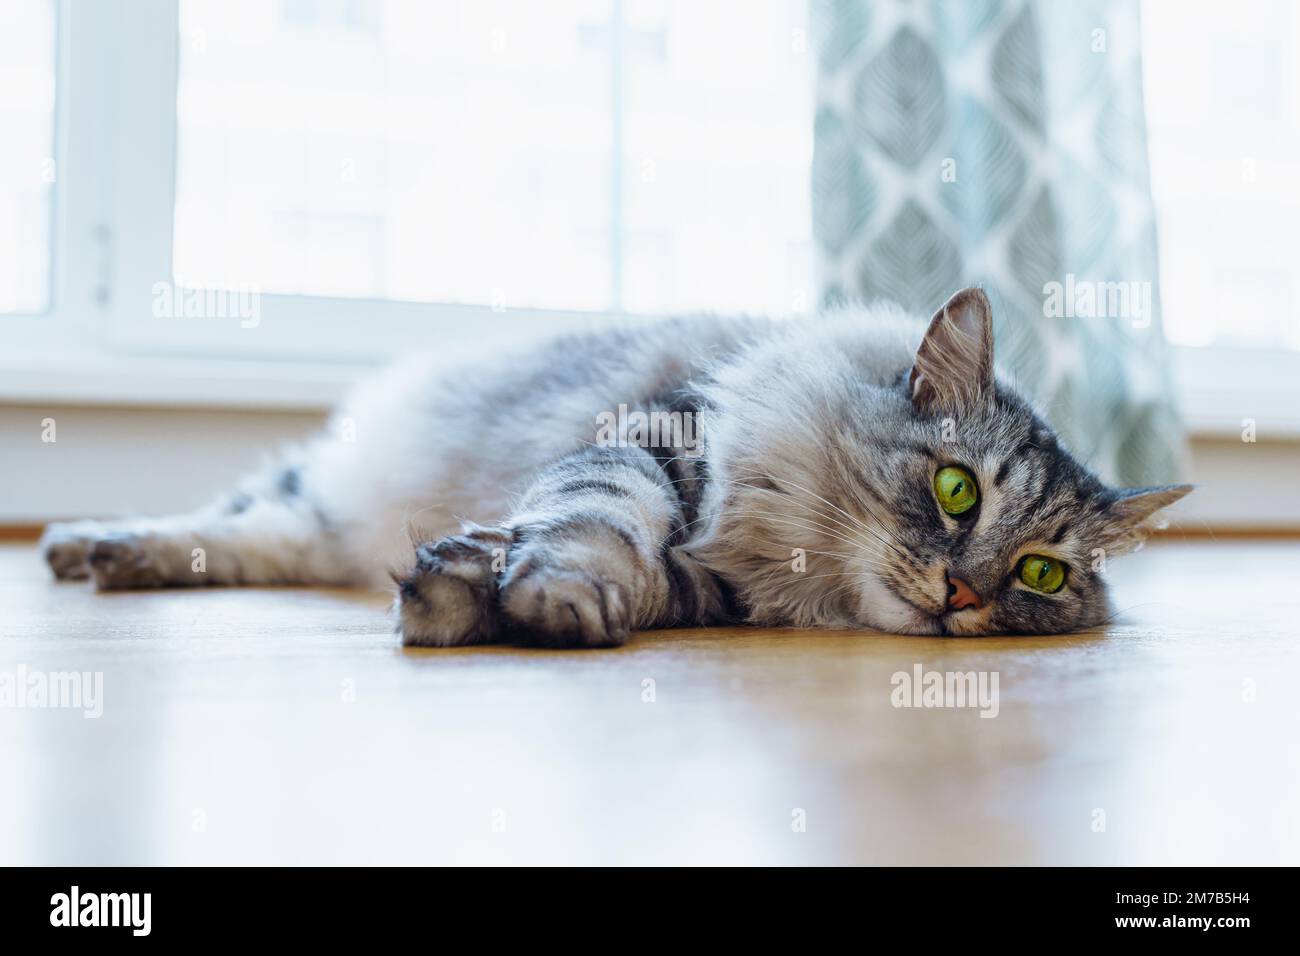 il gatto domestico grigio soffice giace pigramente sul pavimento di parquet, al sole. Luce calda e soffusa e confortevole per gli animali domestici. segue attentamente l'oggetto invisibile Foto Stock